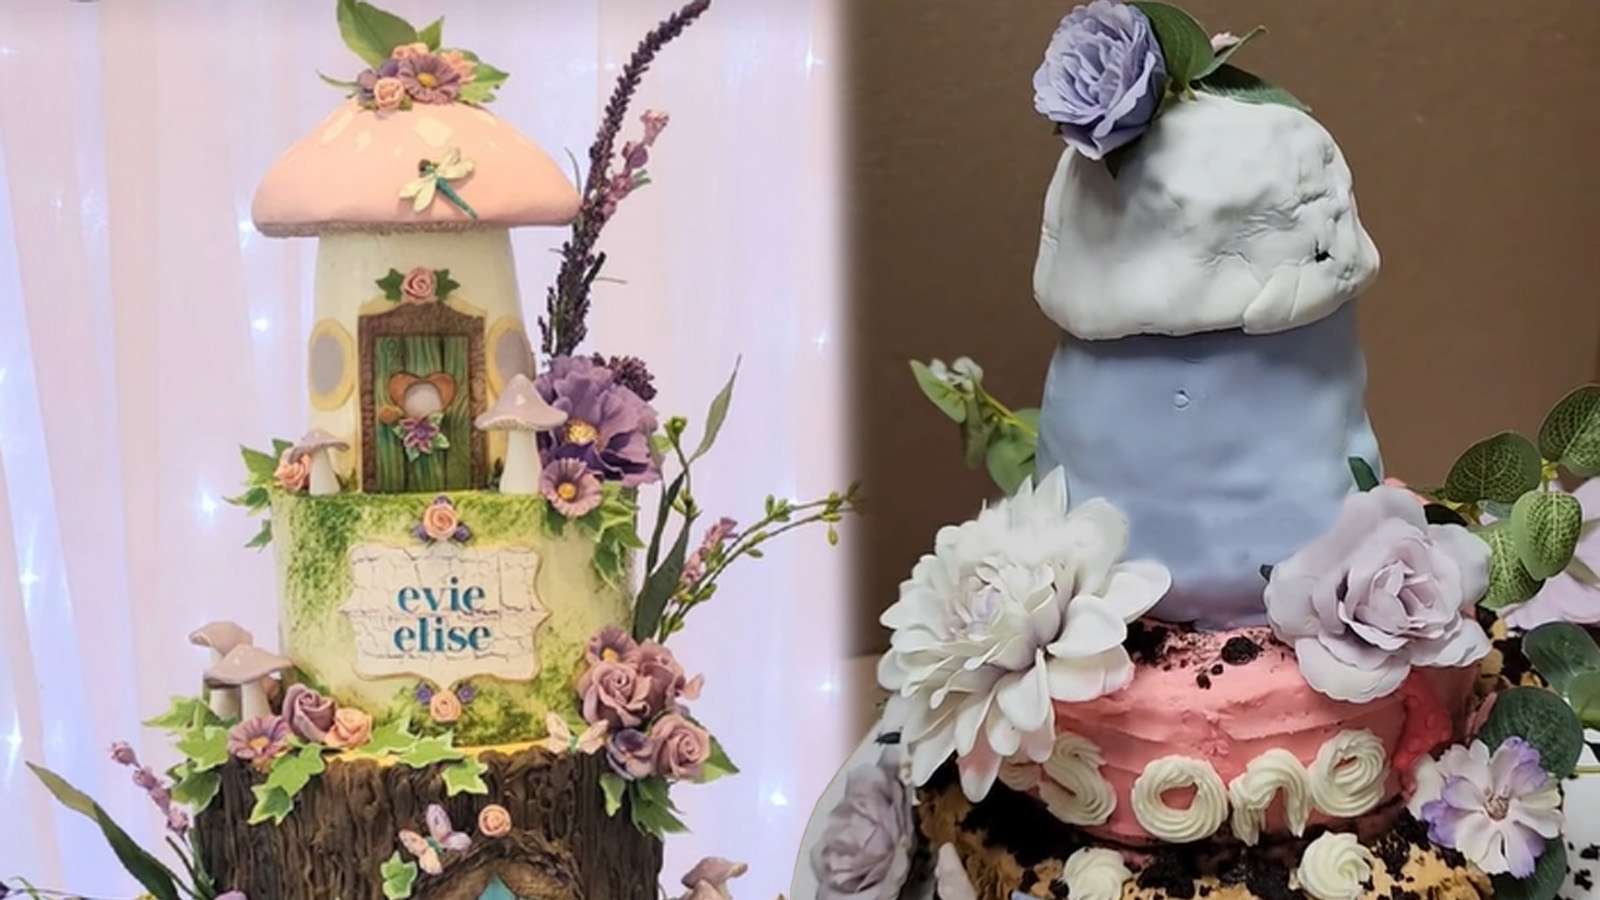 TikToker splits the internet after spending $200 on ‘disastrous’ first birthday cake